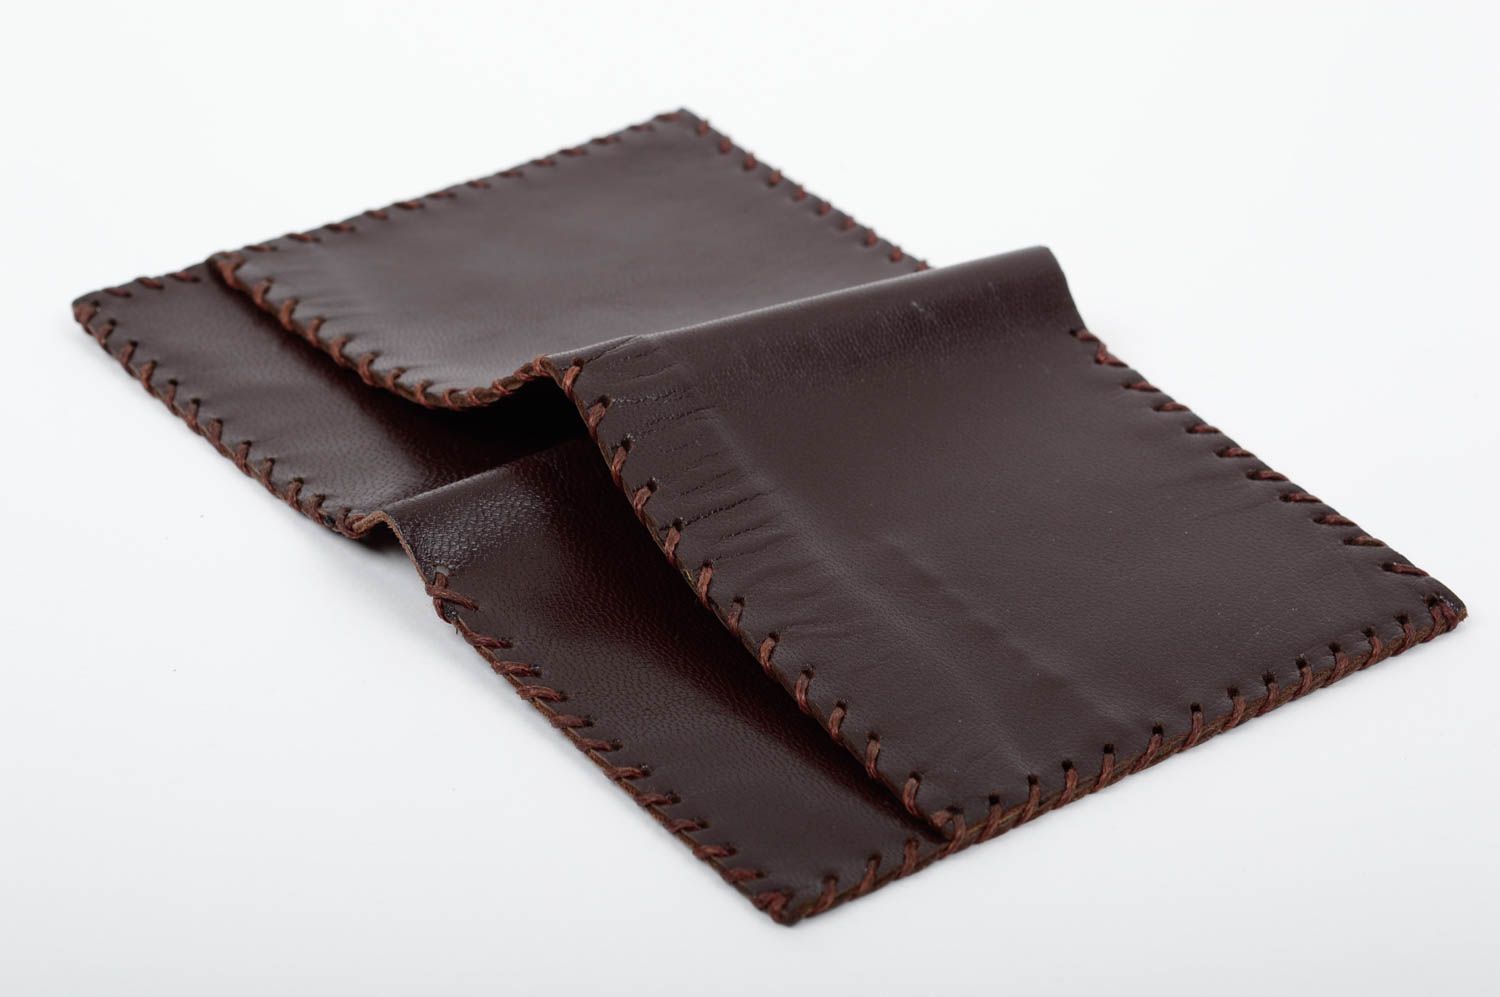 Кожаный кошелек портмоне прямоугольный коричневый красивый стильный хэнд мейд фото 3